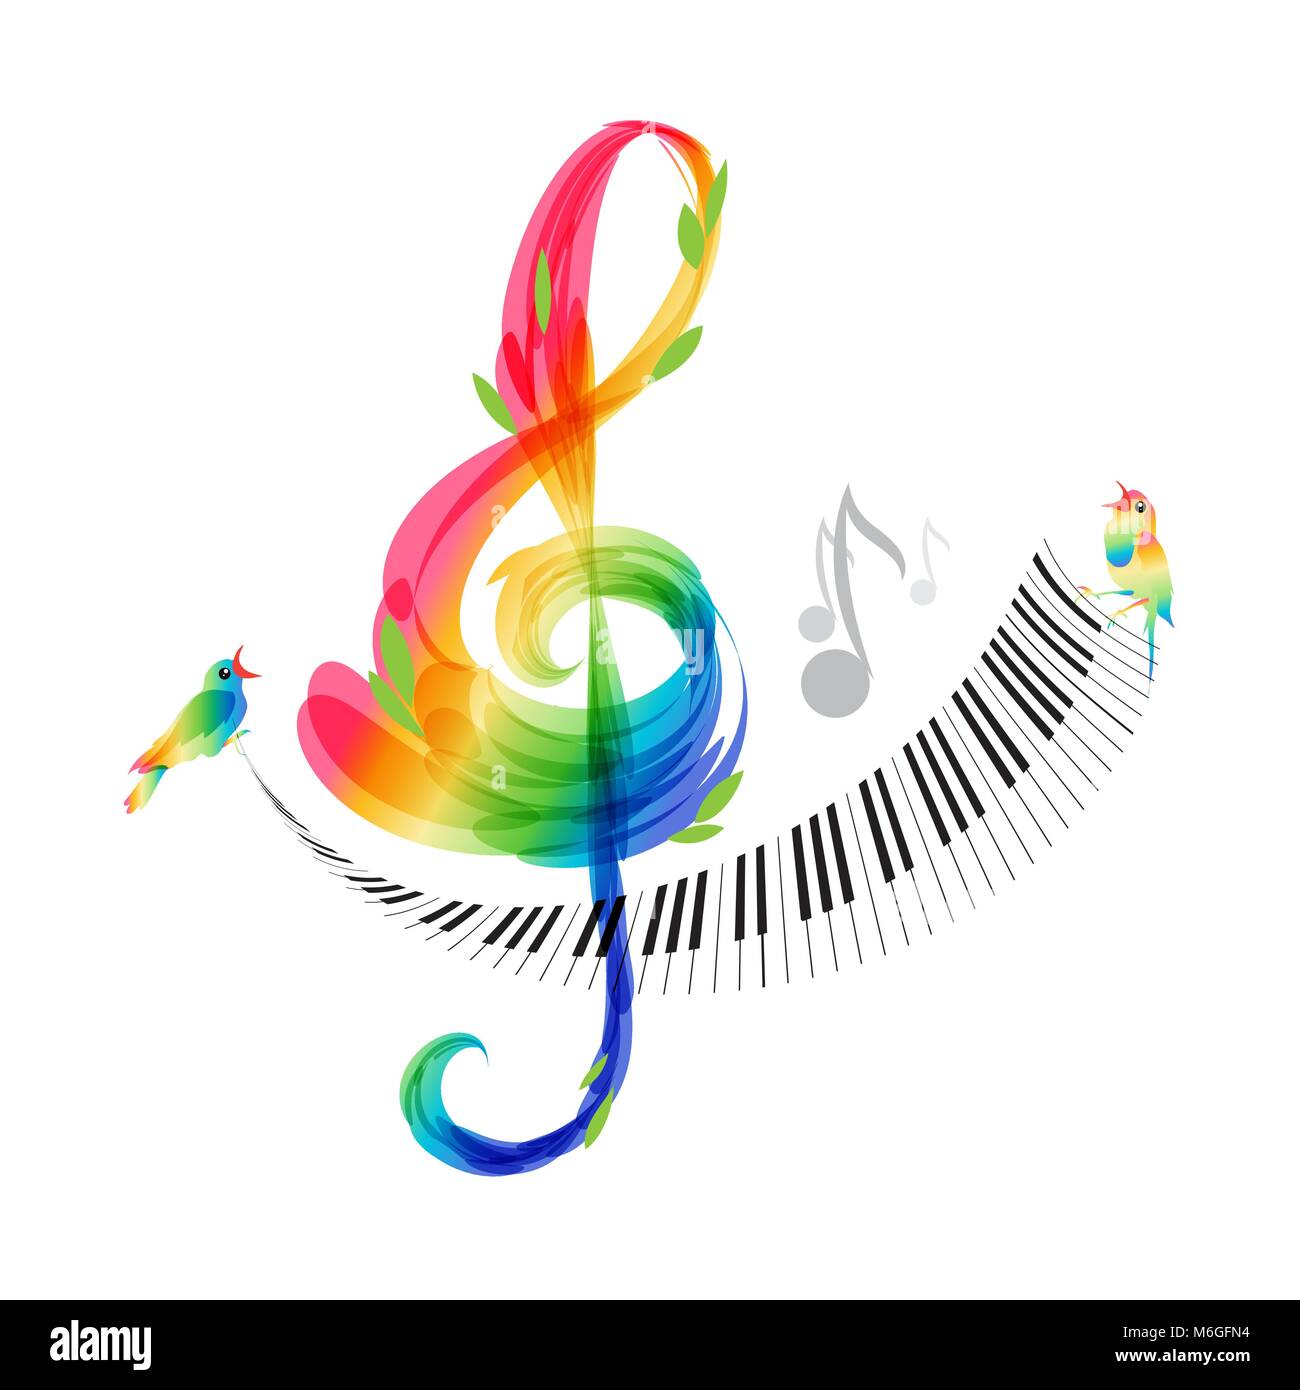 Conception de la musique, clé de sol et clavier de piano sur fond blanc,  vector illustration Image Vectorielle Stock - Alamy